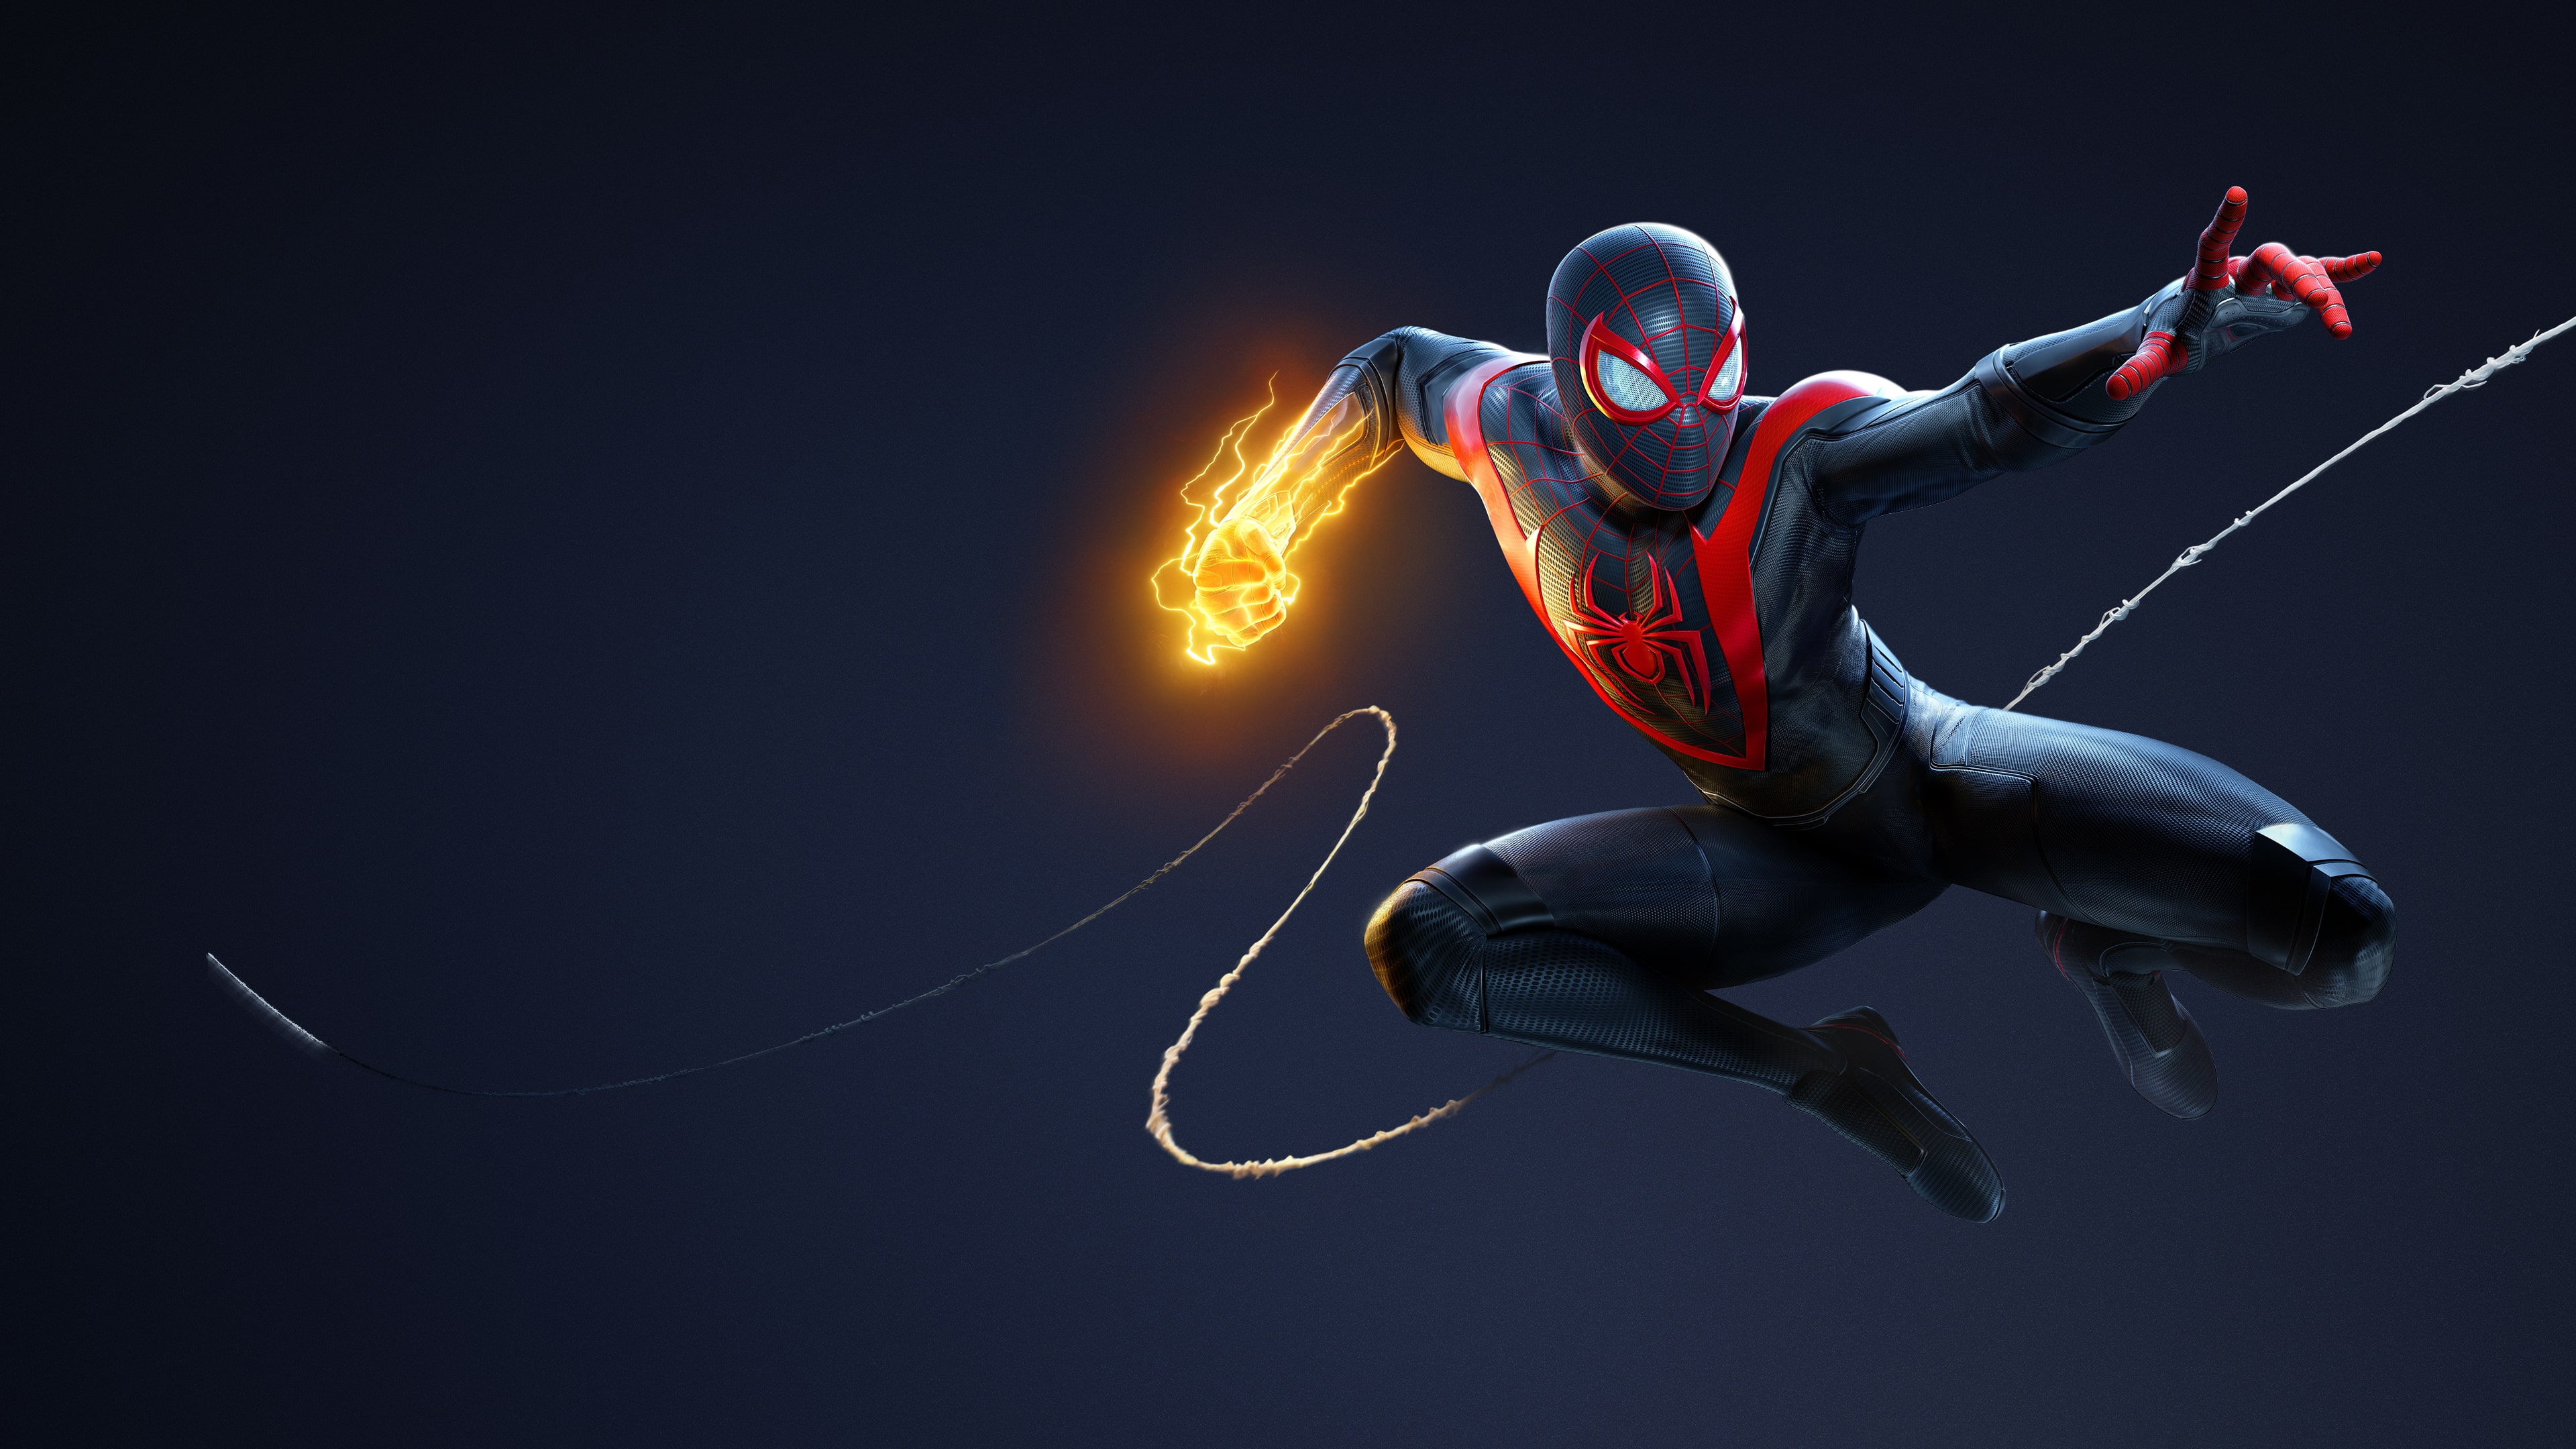 Marvel's Spider-Man: Miles Morales Edición Definitiva